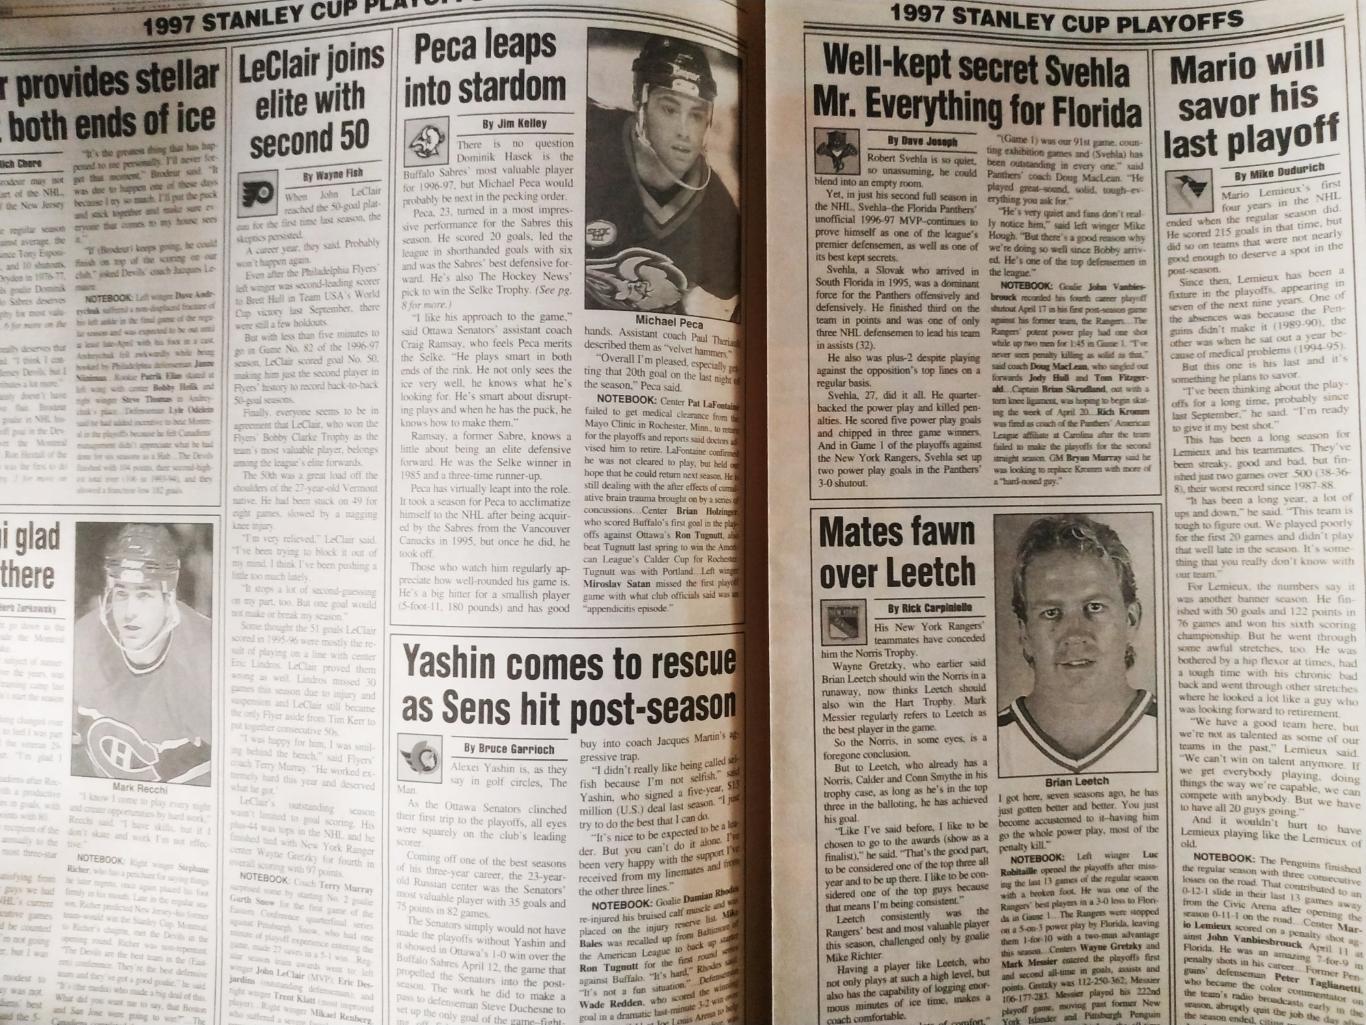 ХОККЕЙ ЖУРНАЛ ЕЖЕНЕДЕЛЬНИК НХЛ НОВОСТИ ХОККЕЯ NHL MAY.2 1997 THE HOCKEY NEWS 4